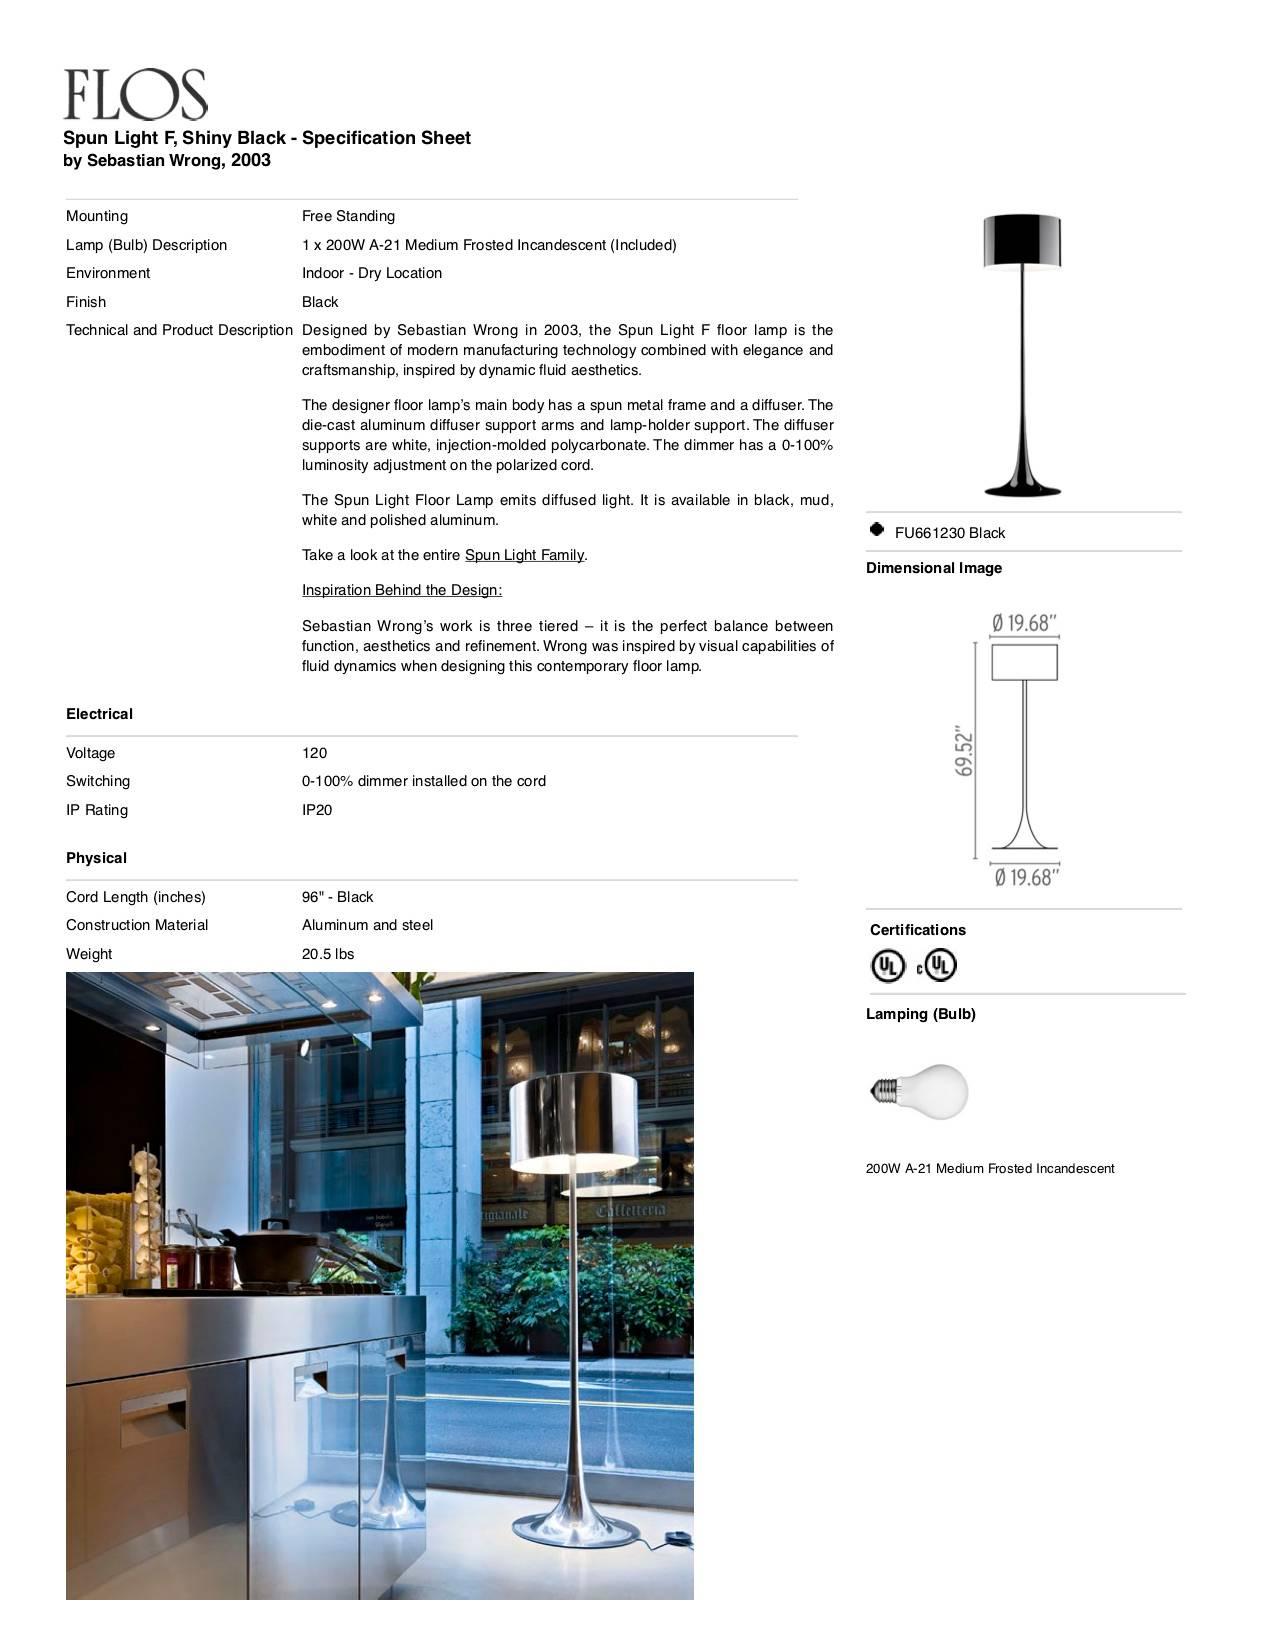 Italian FLOS Spun Light Floor Lamp in Shiny Black by Sebastian Wrong For Sale